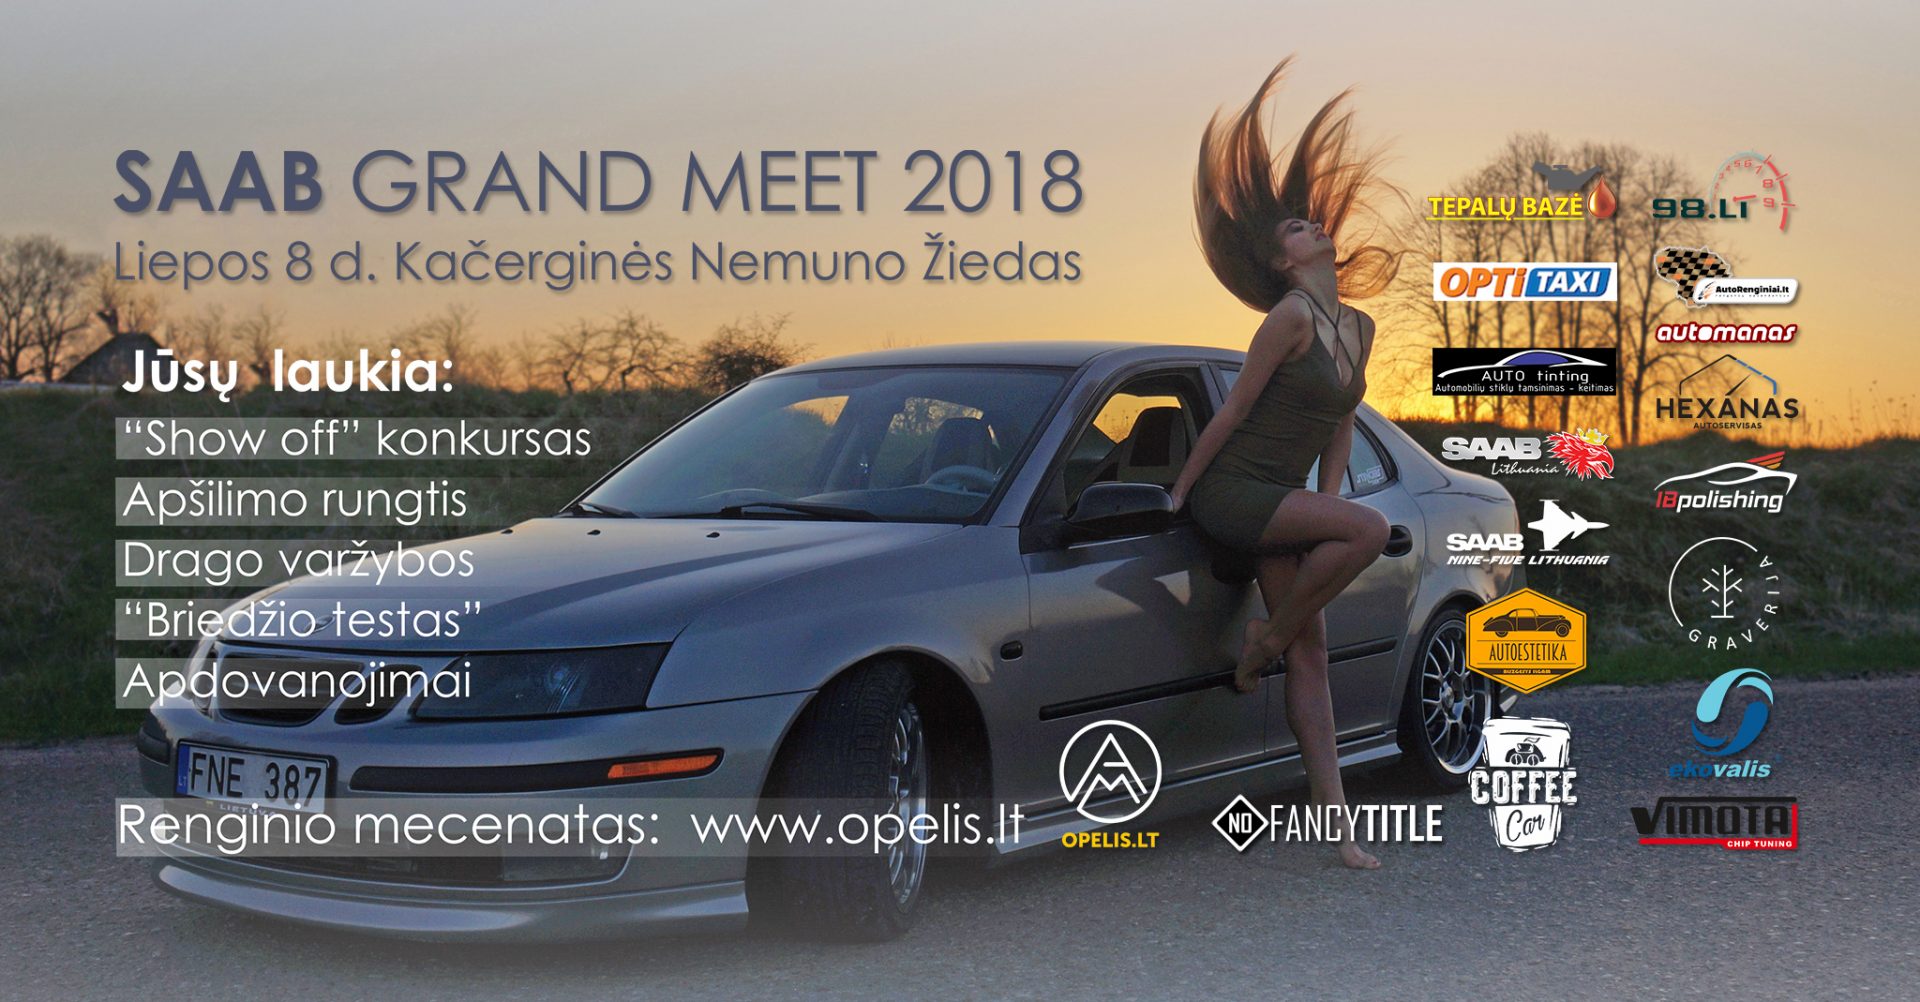 SAAB Grand Meet 2018